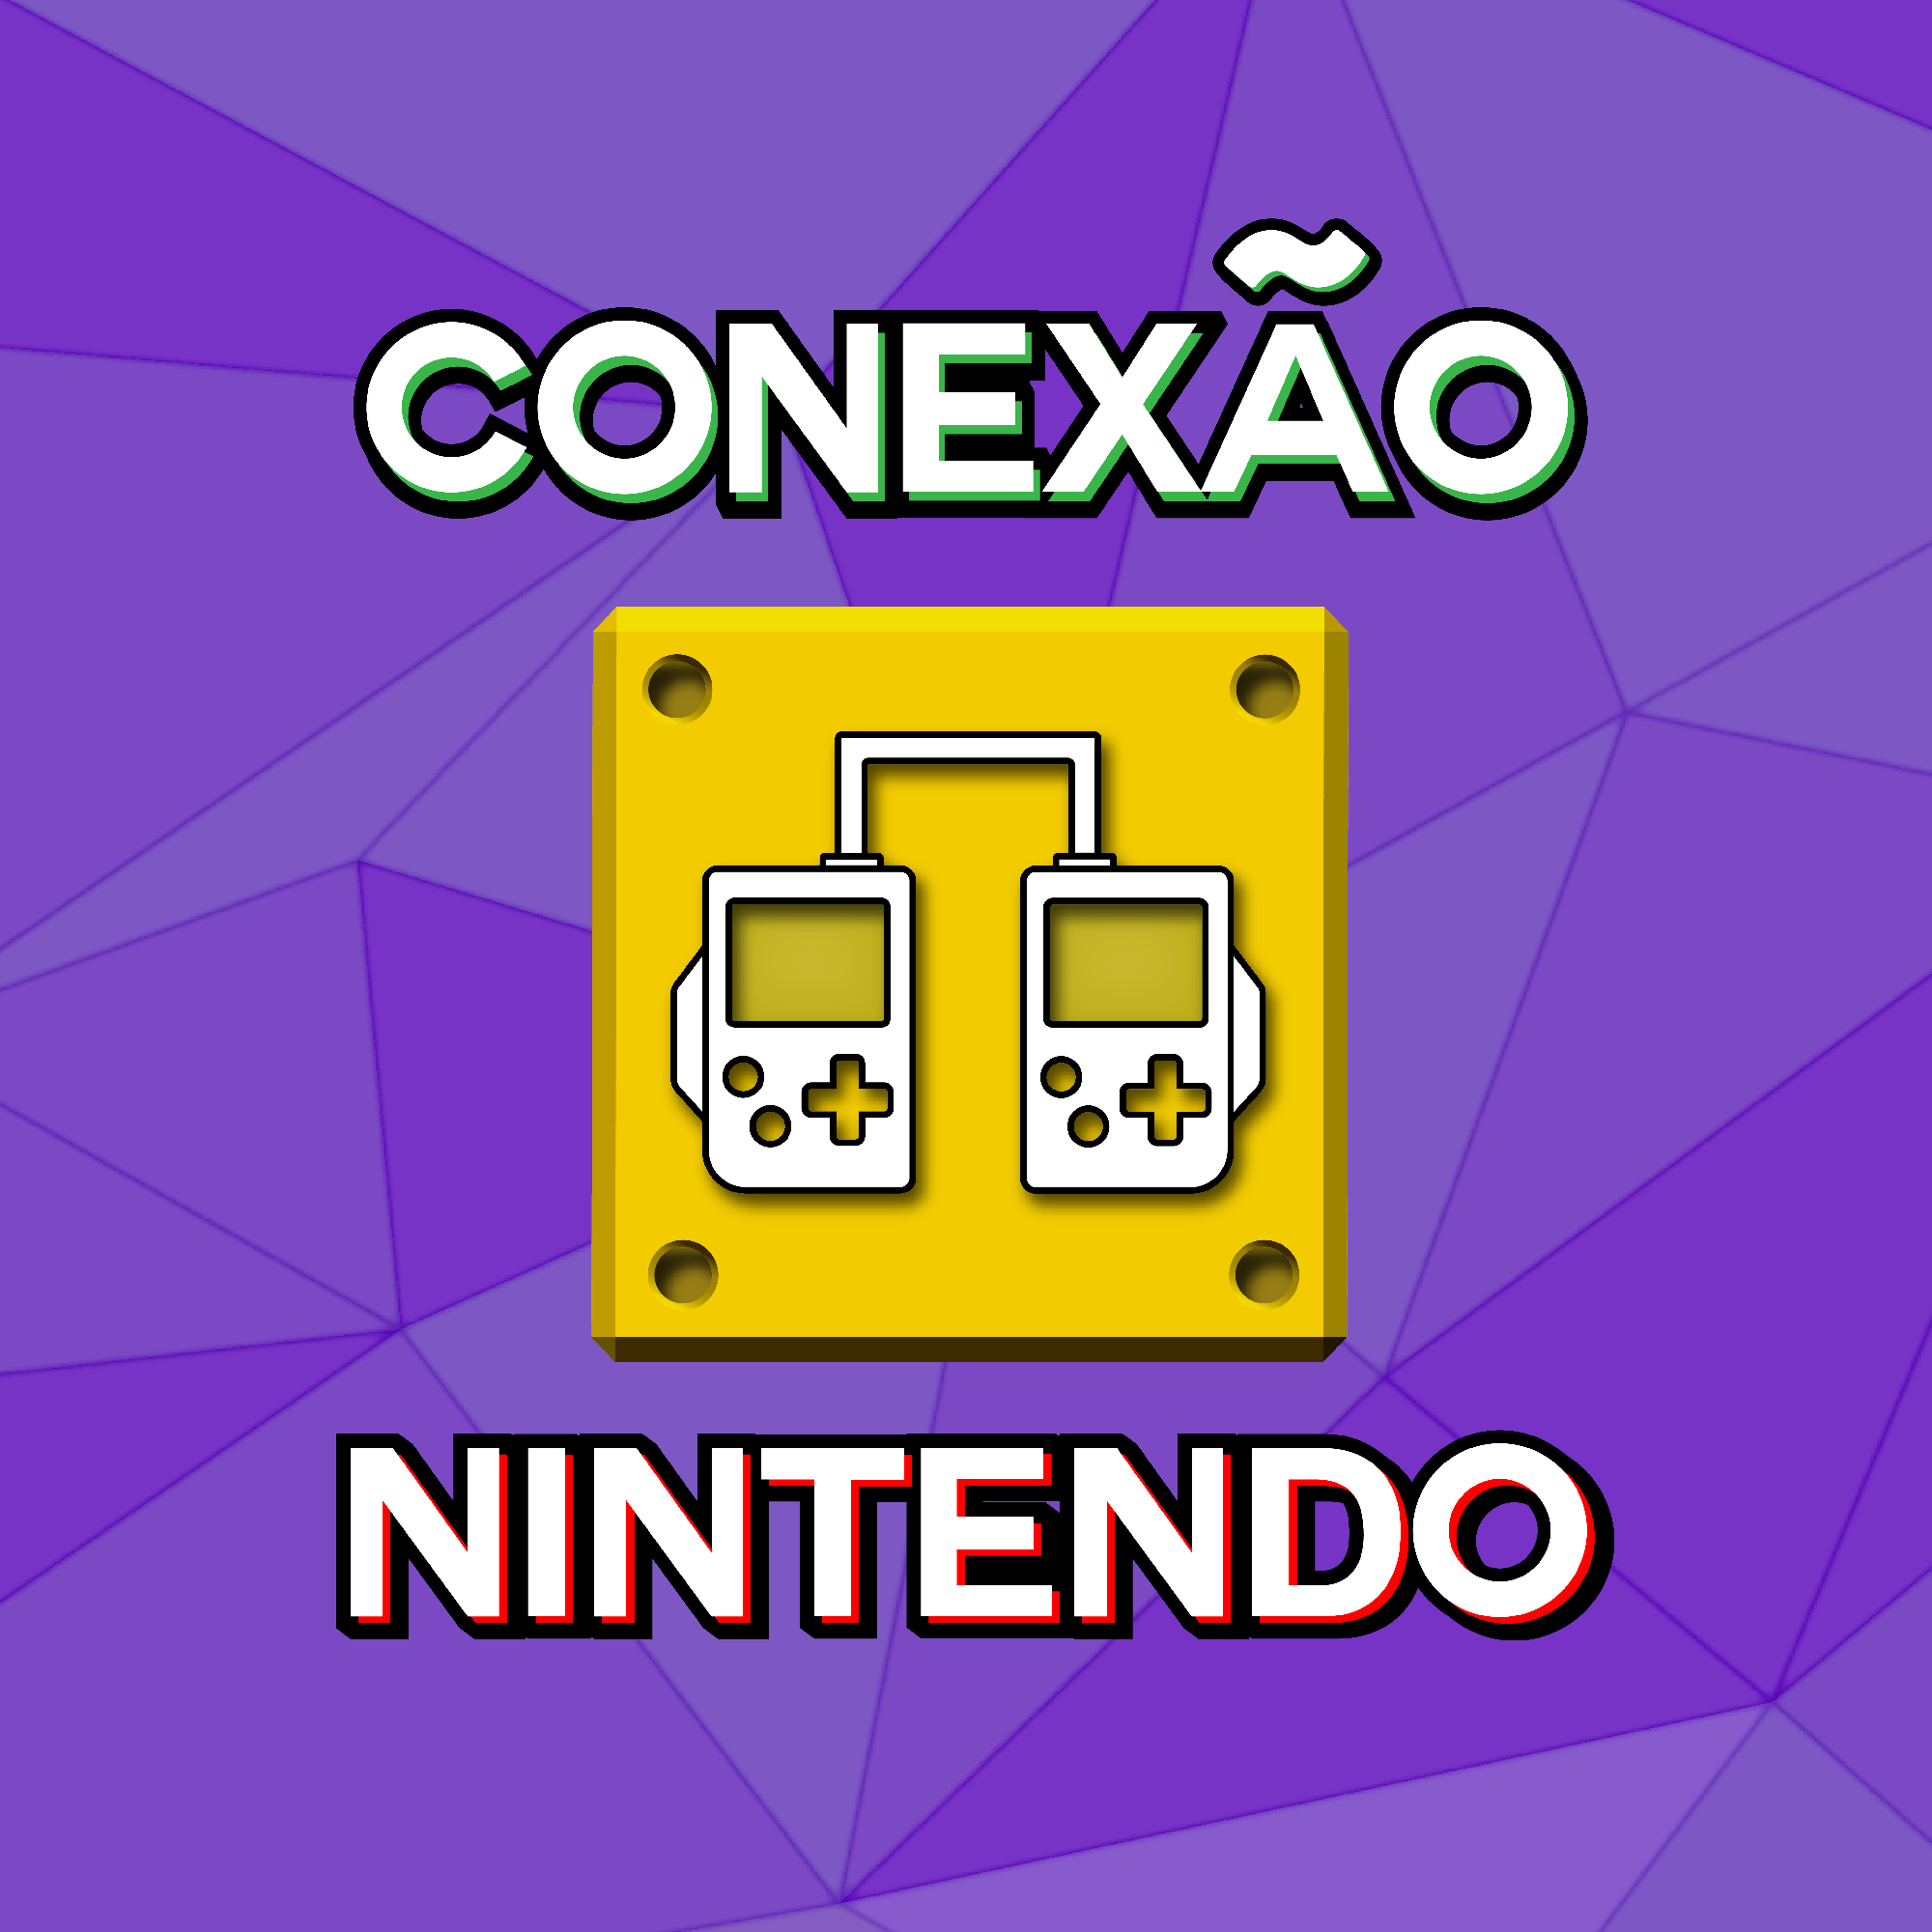 Conexão Nintendo #51 - Premiação Conexão Nintendo 2021 21/12/2021